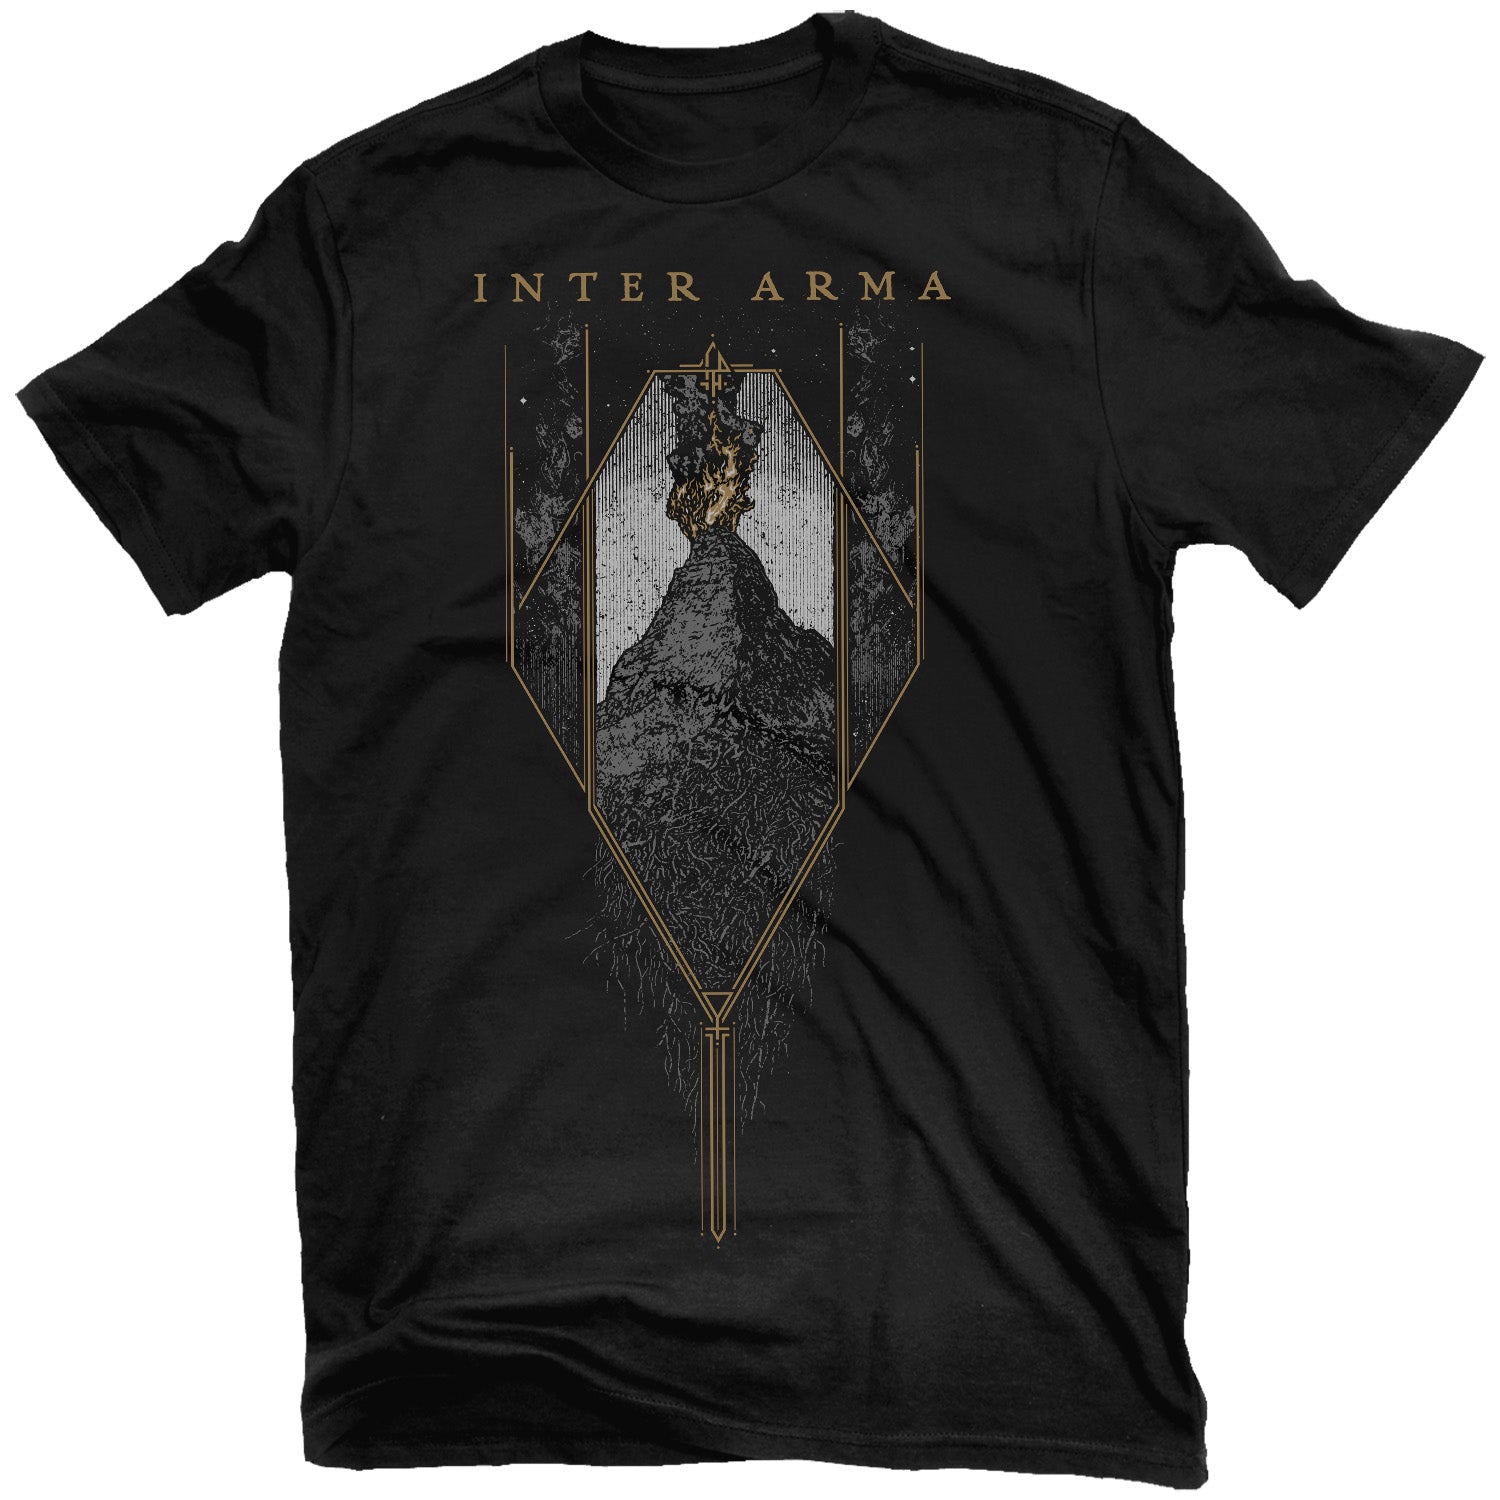 Inter Arma "Citadel" T-Shirt